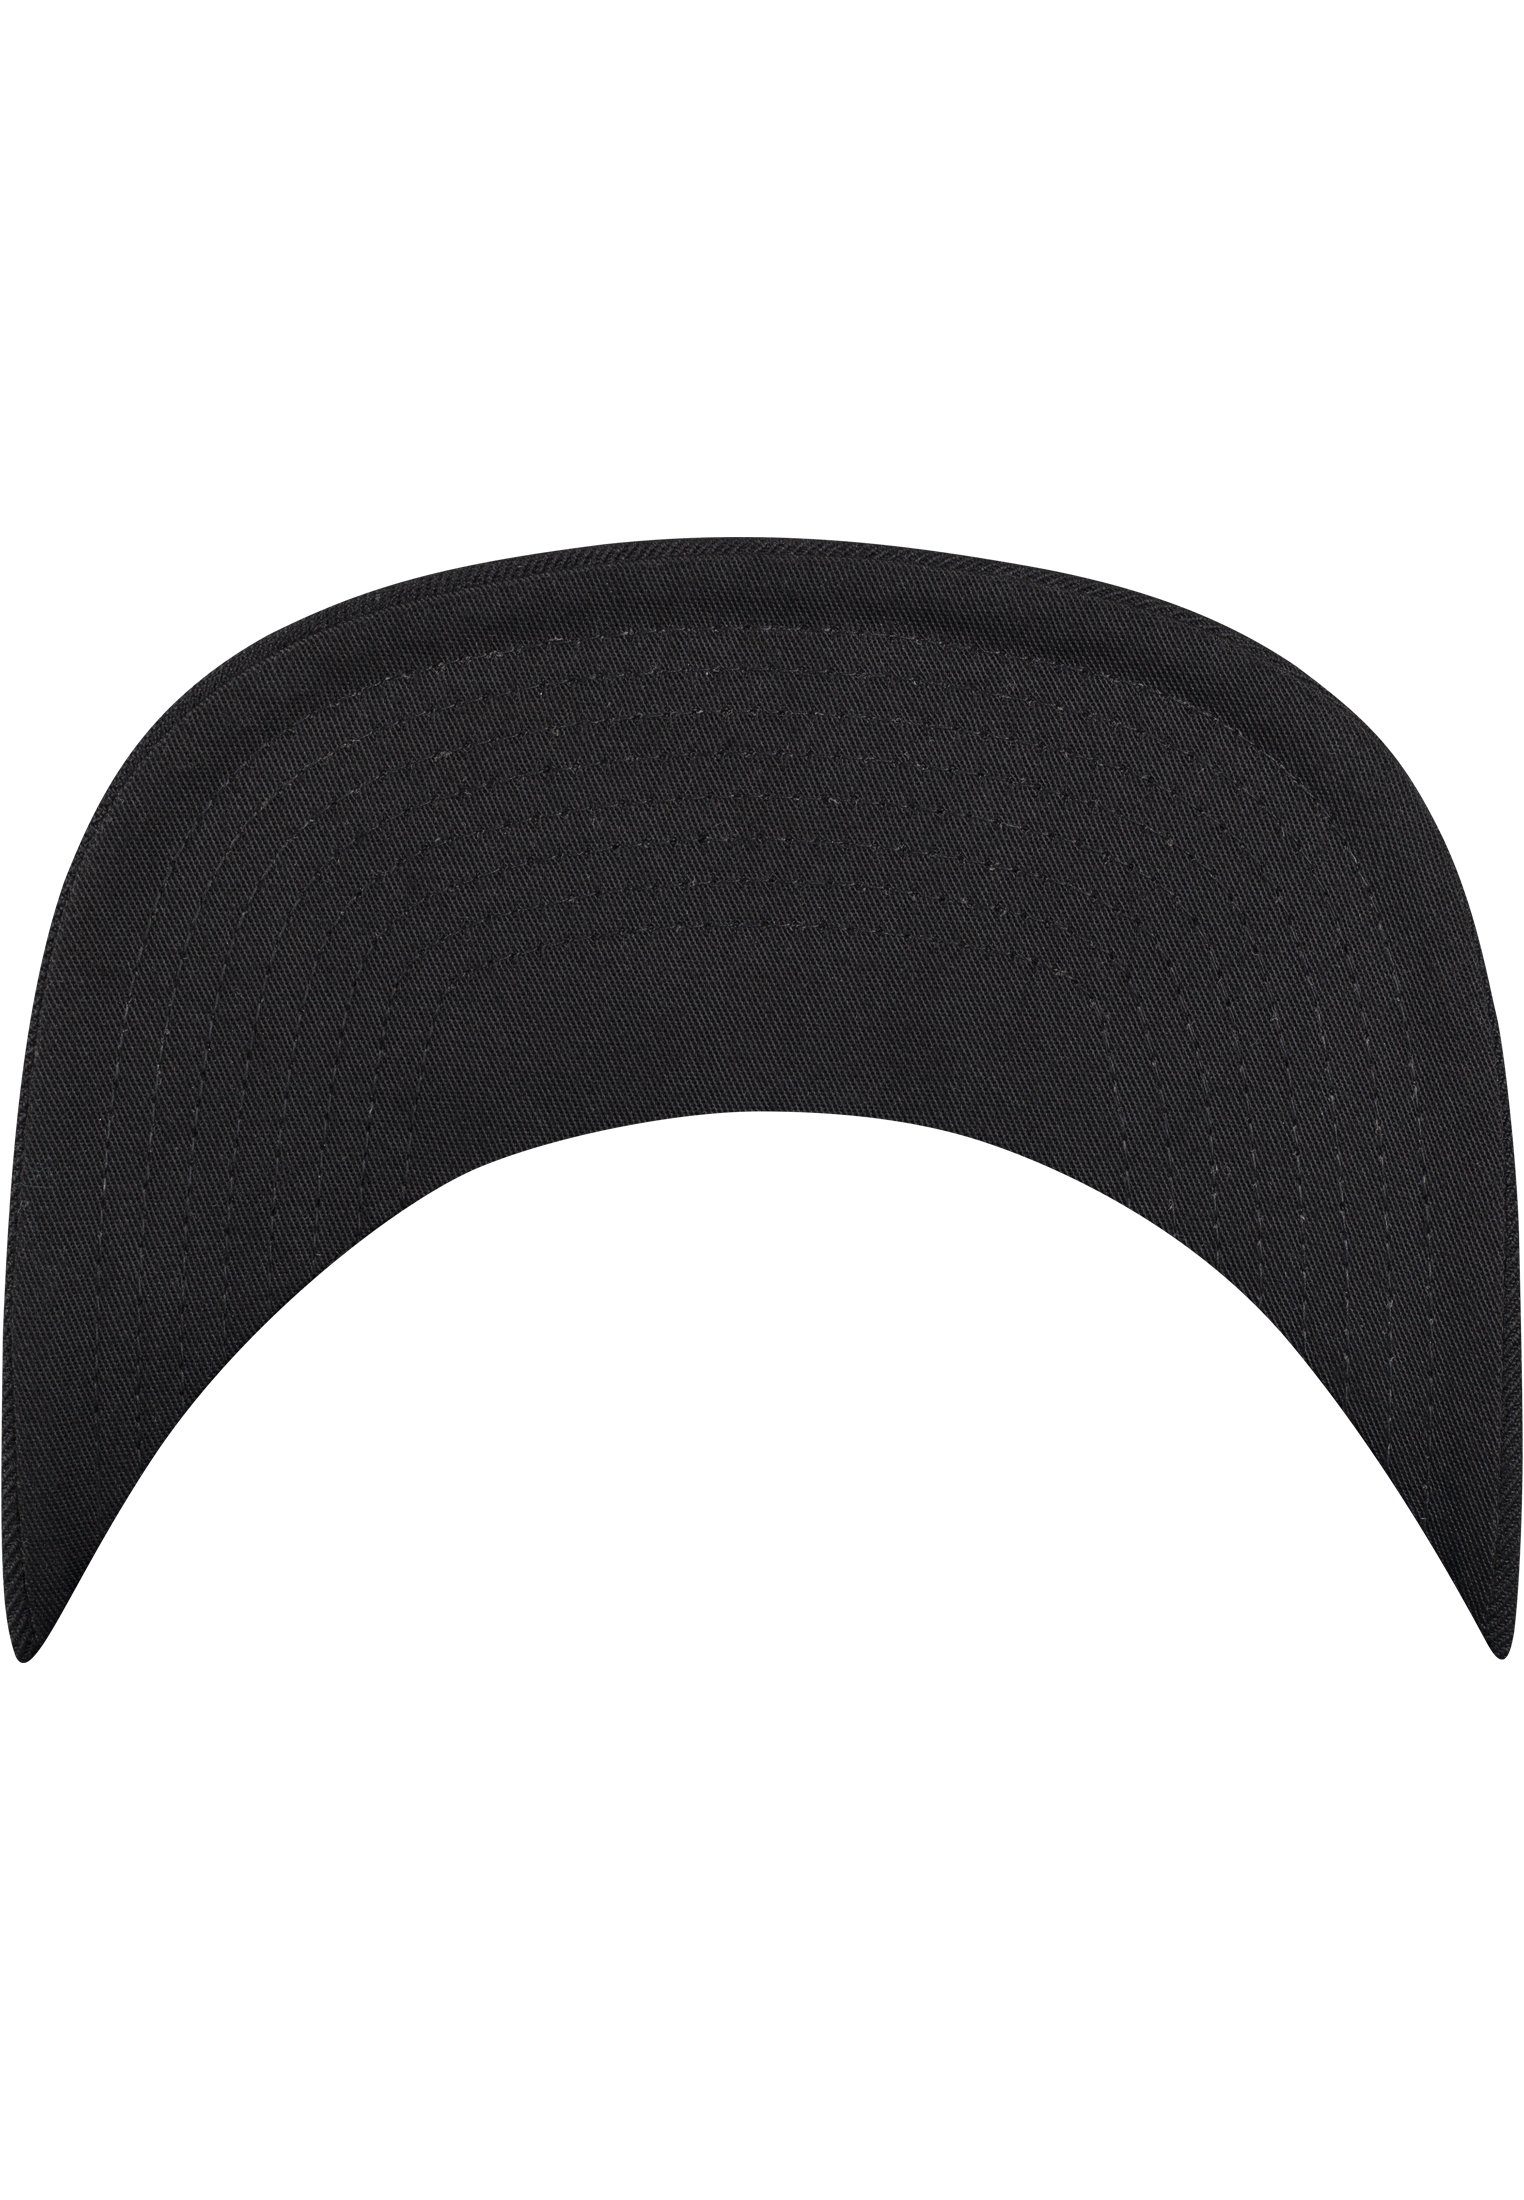 Tie Bandana Flexfit black/black Cap Snapback Snapback Flex